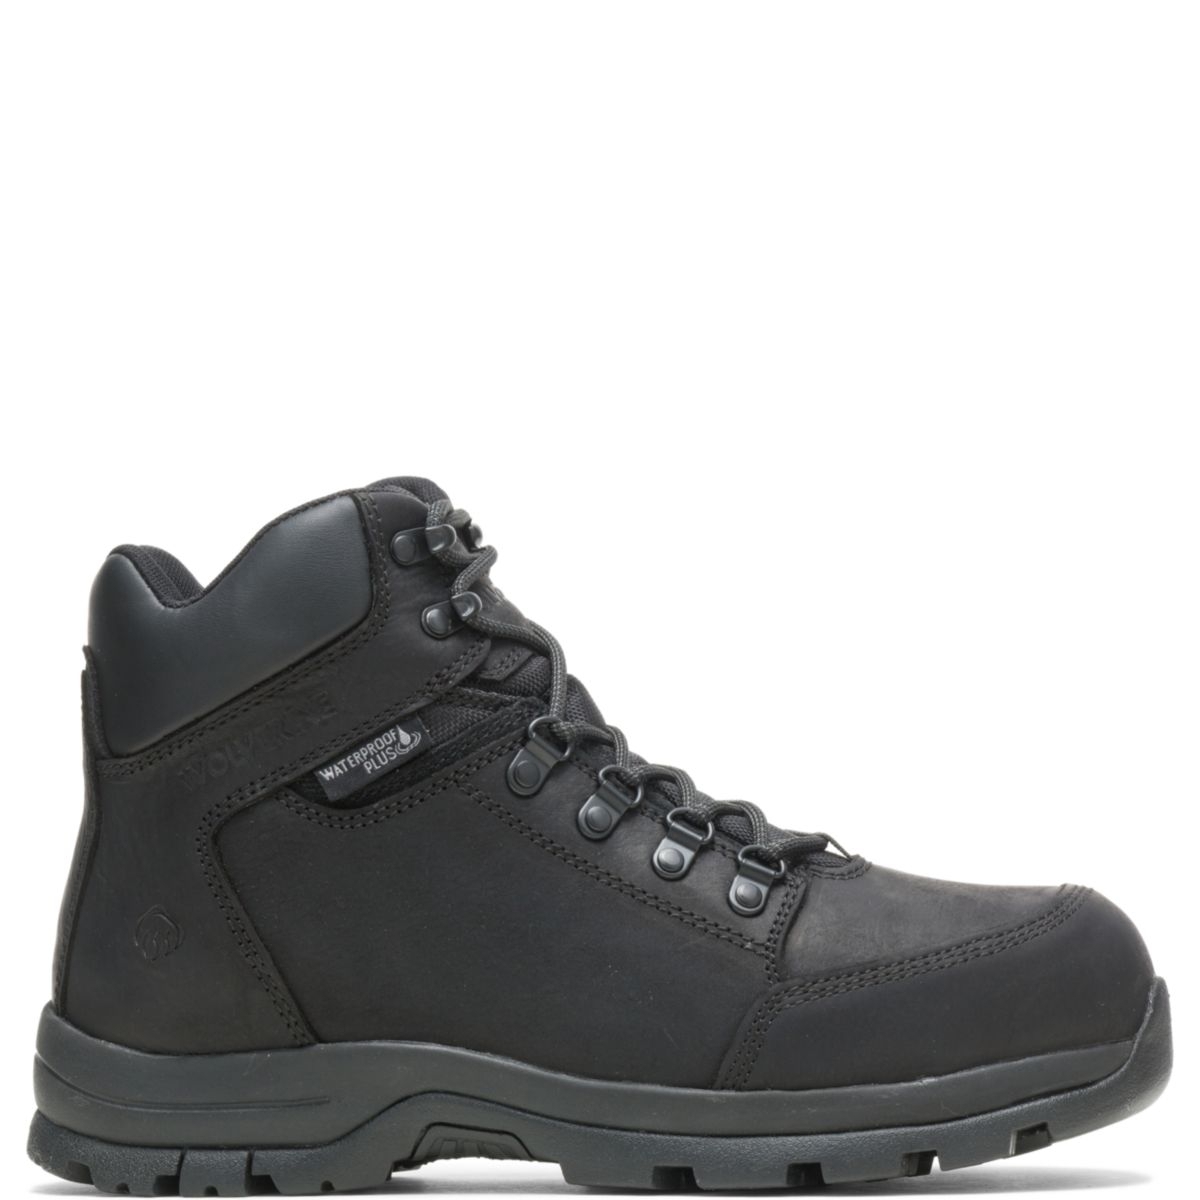 WOLVERINE Men's Grayson Steel Toe Waterproof Work Boot Black - W211042 BLACK - BLACK, 10.5